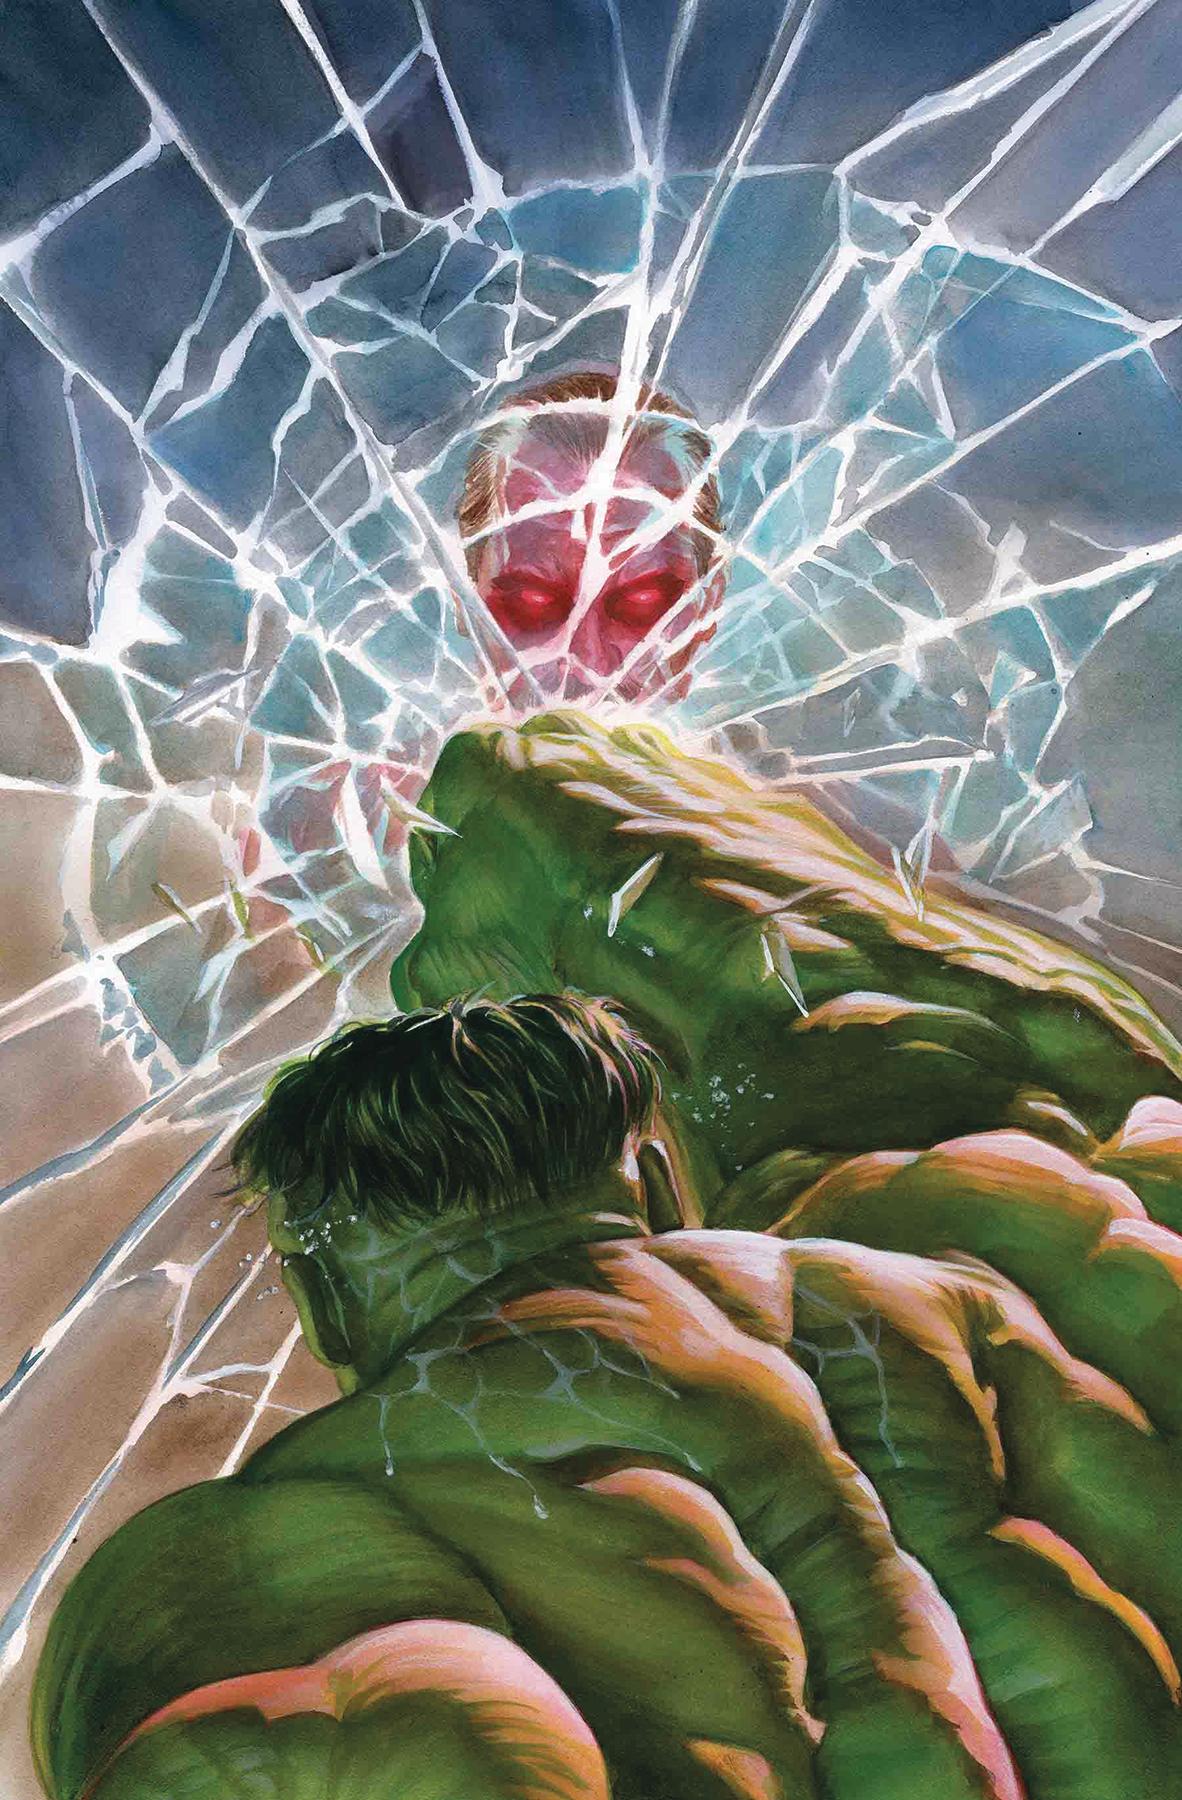 Immortal Hulk Vol. 1 #6